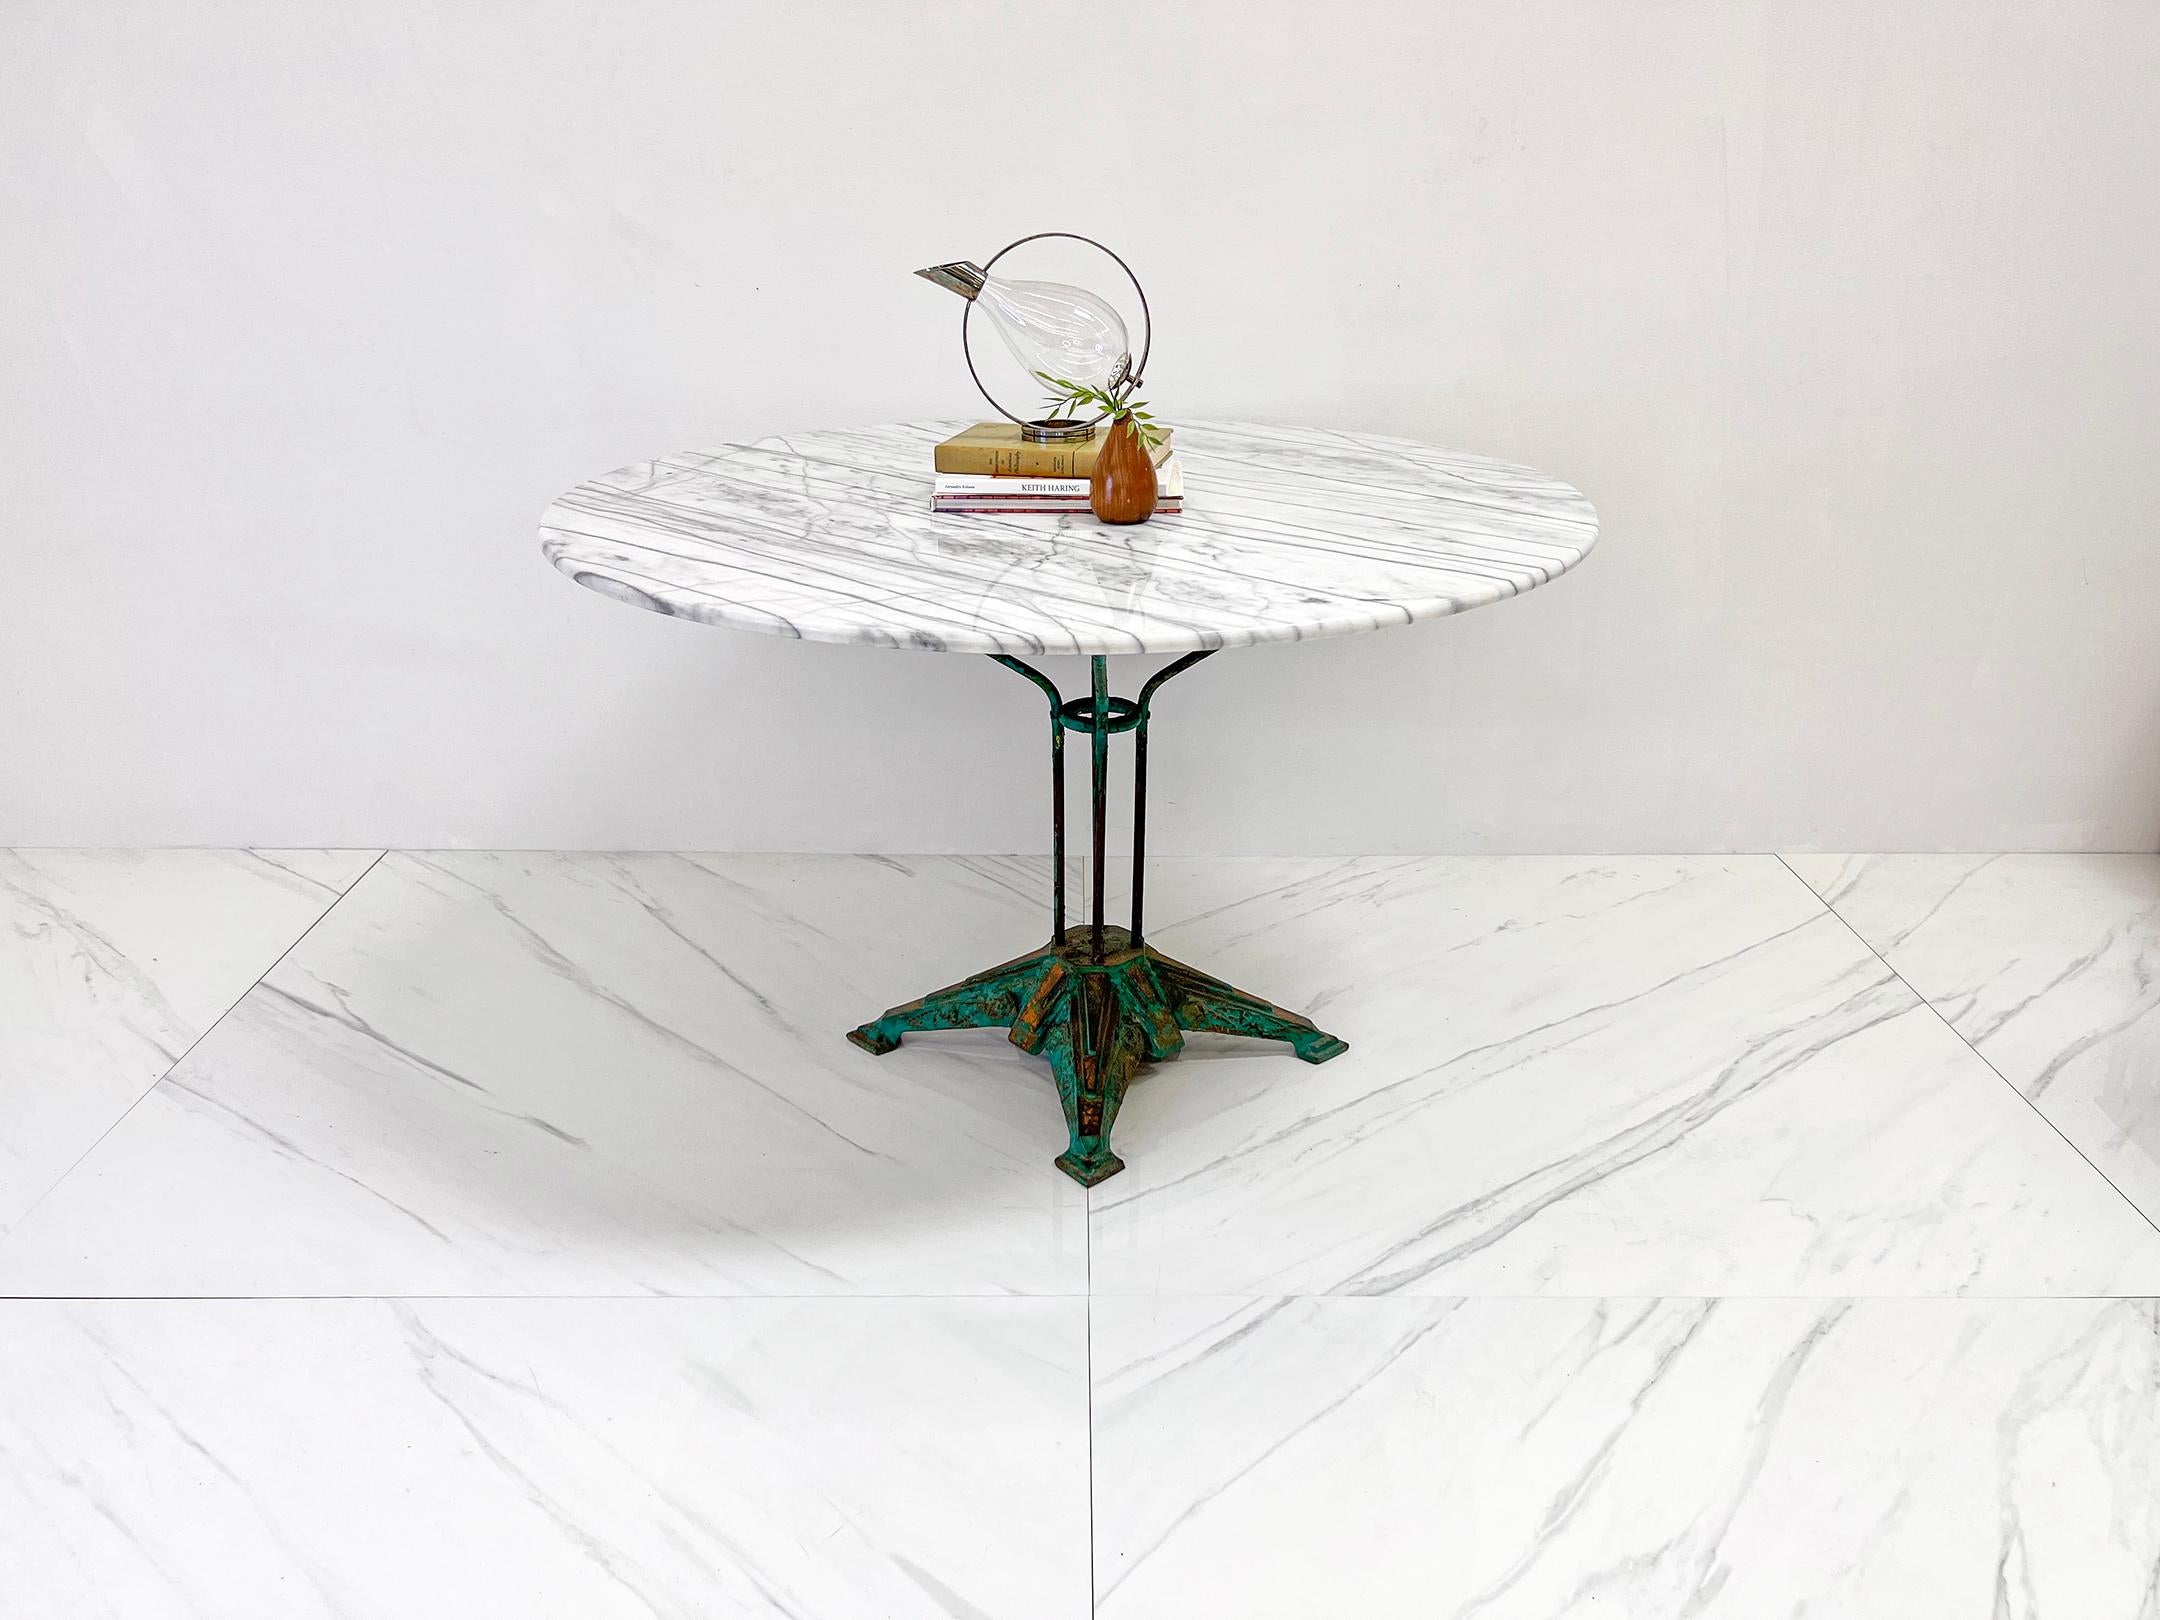 Cette table est absolument magnifique. Une table de salle à manger ou de présentation Louis Vuitton en fer vintage avec un plateau en marbre personnalisé. Nous avons acquis cette table avec un peu d'imagination : lorsque nous l'avons achetée, nous